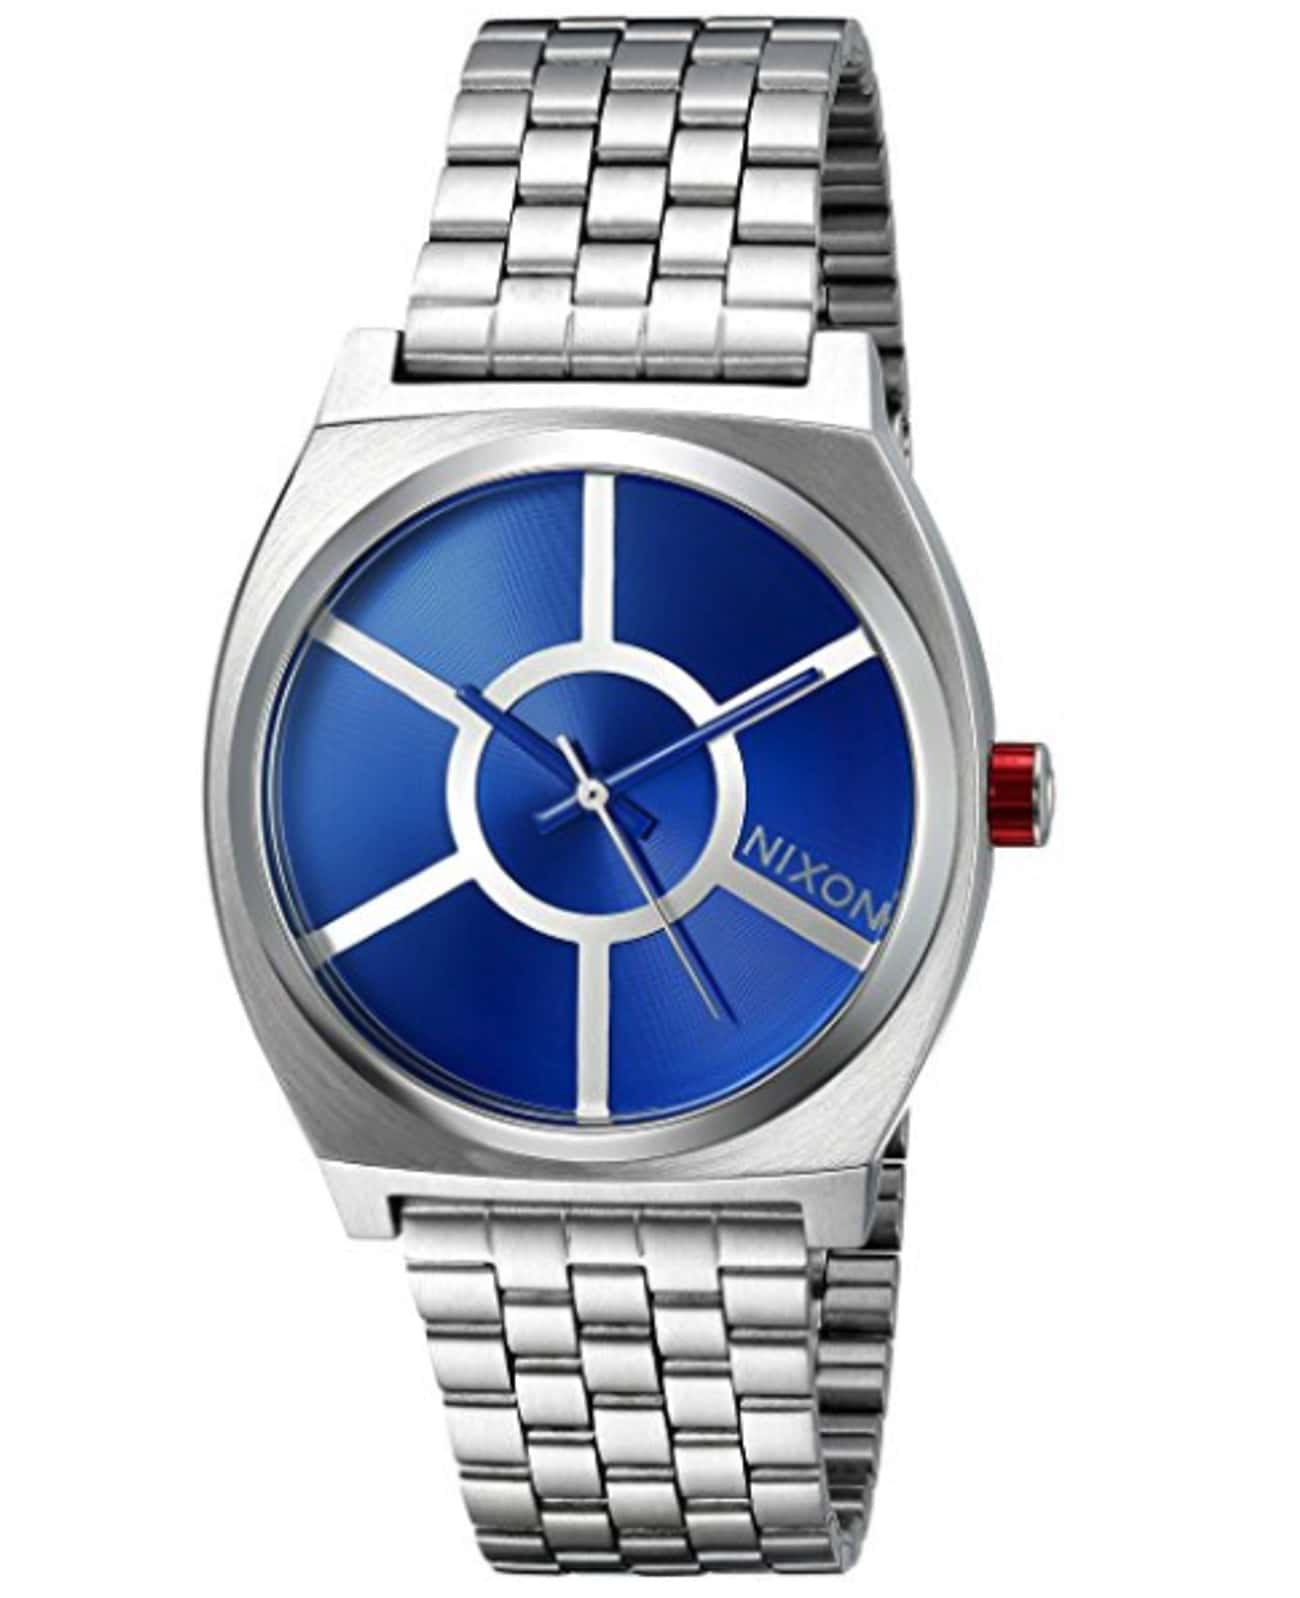 R2-D2 Time Teller Watch